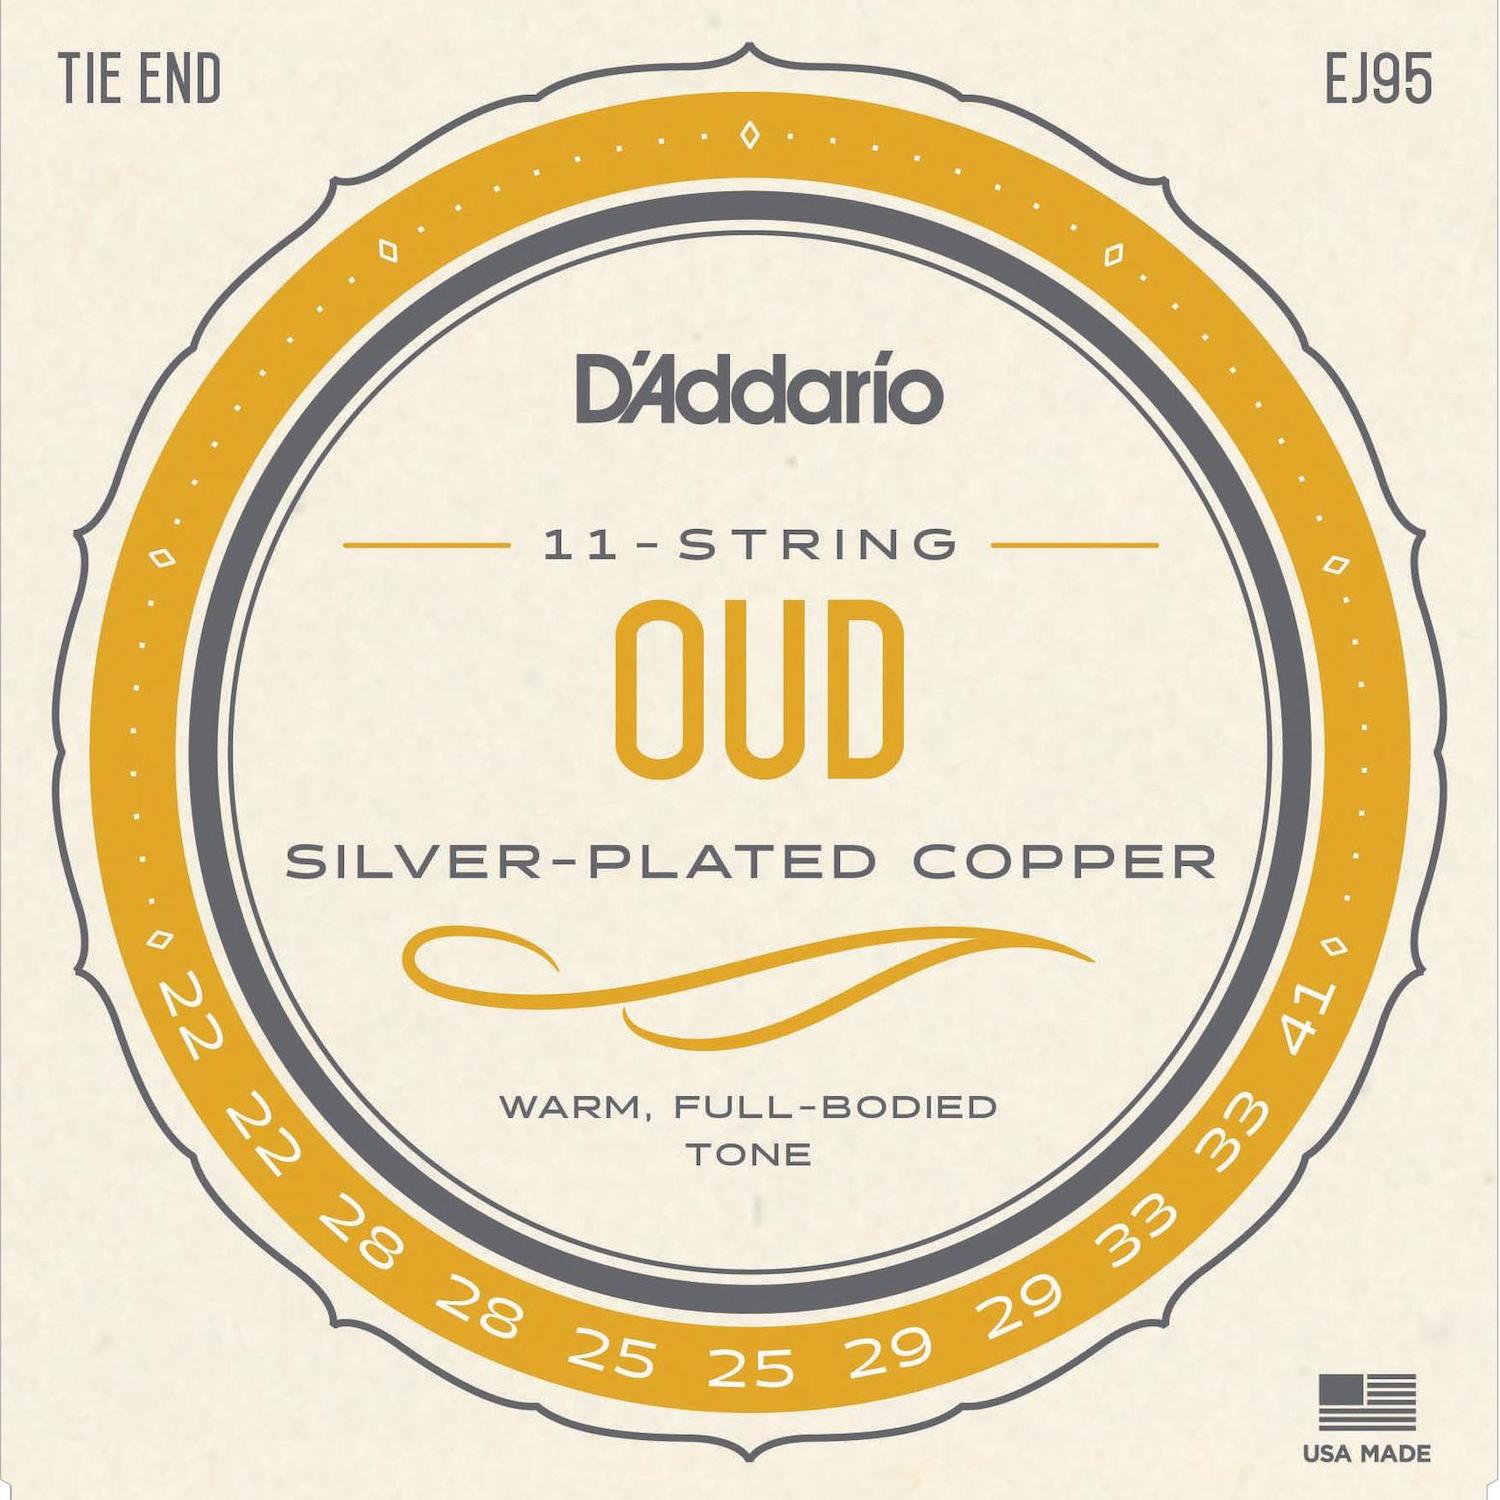 D'Addario J95 11 string Oud strings